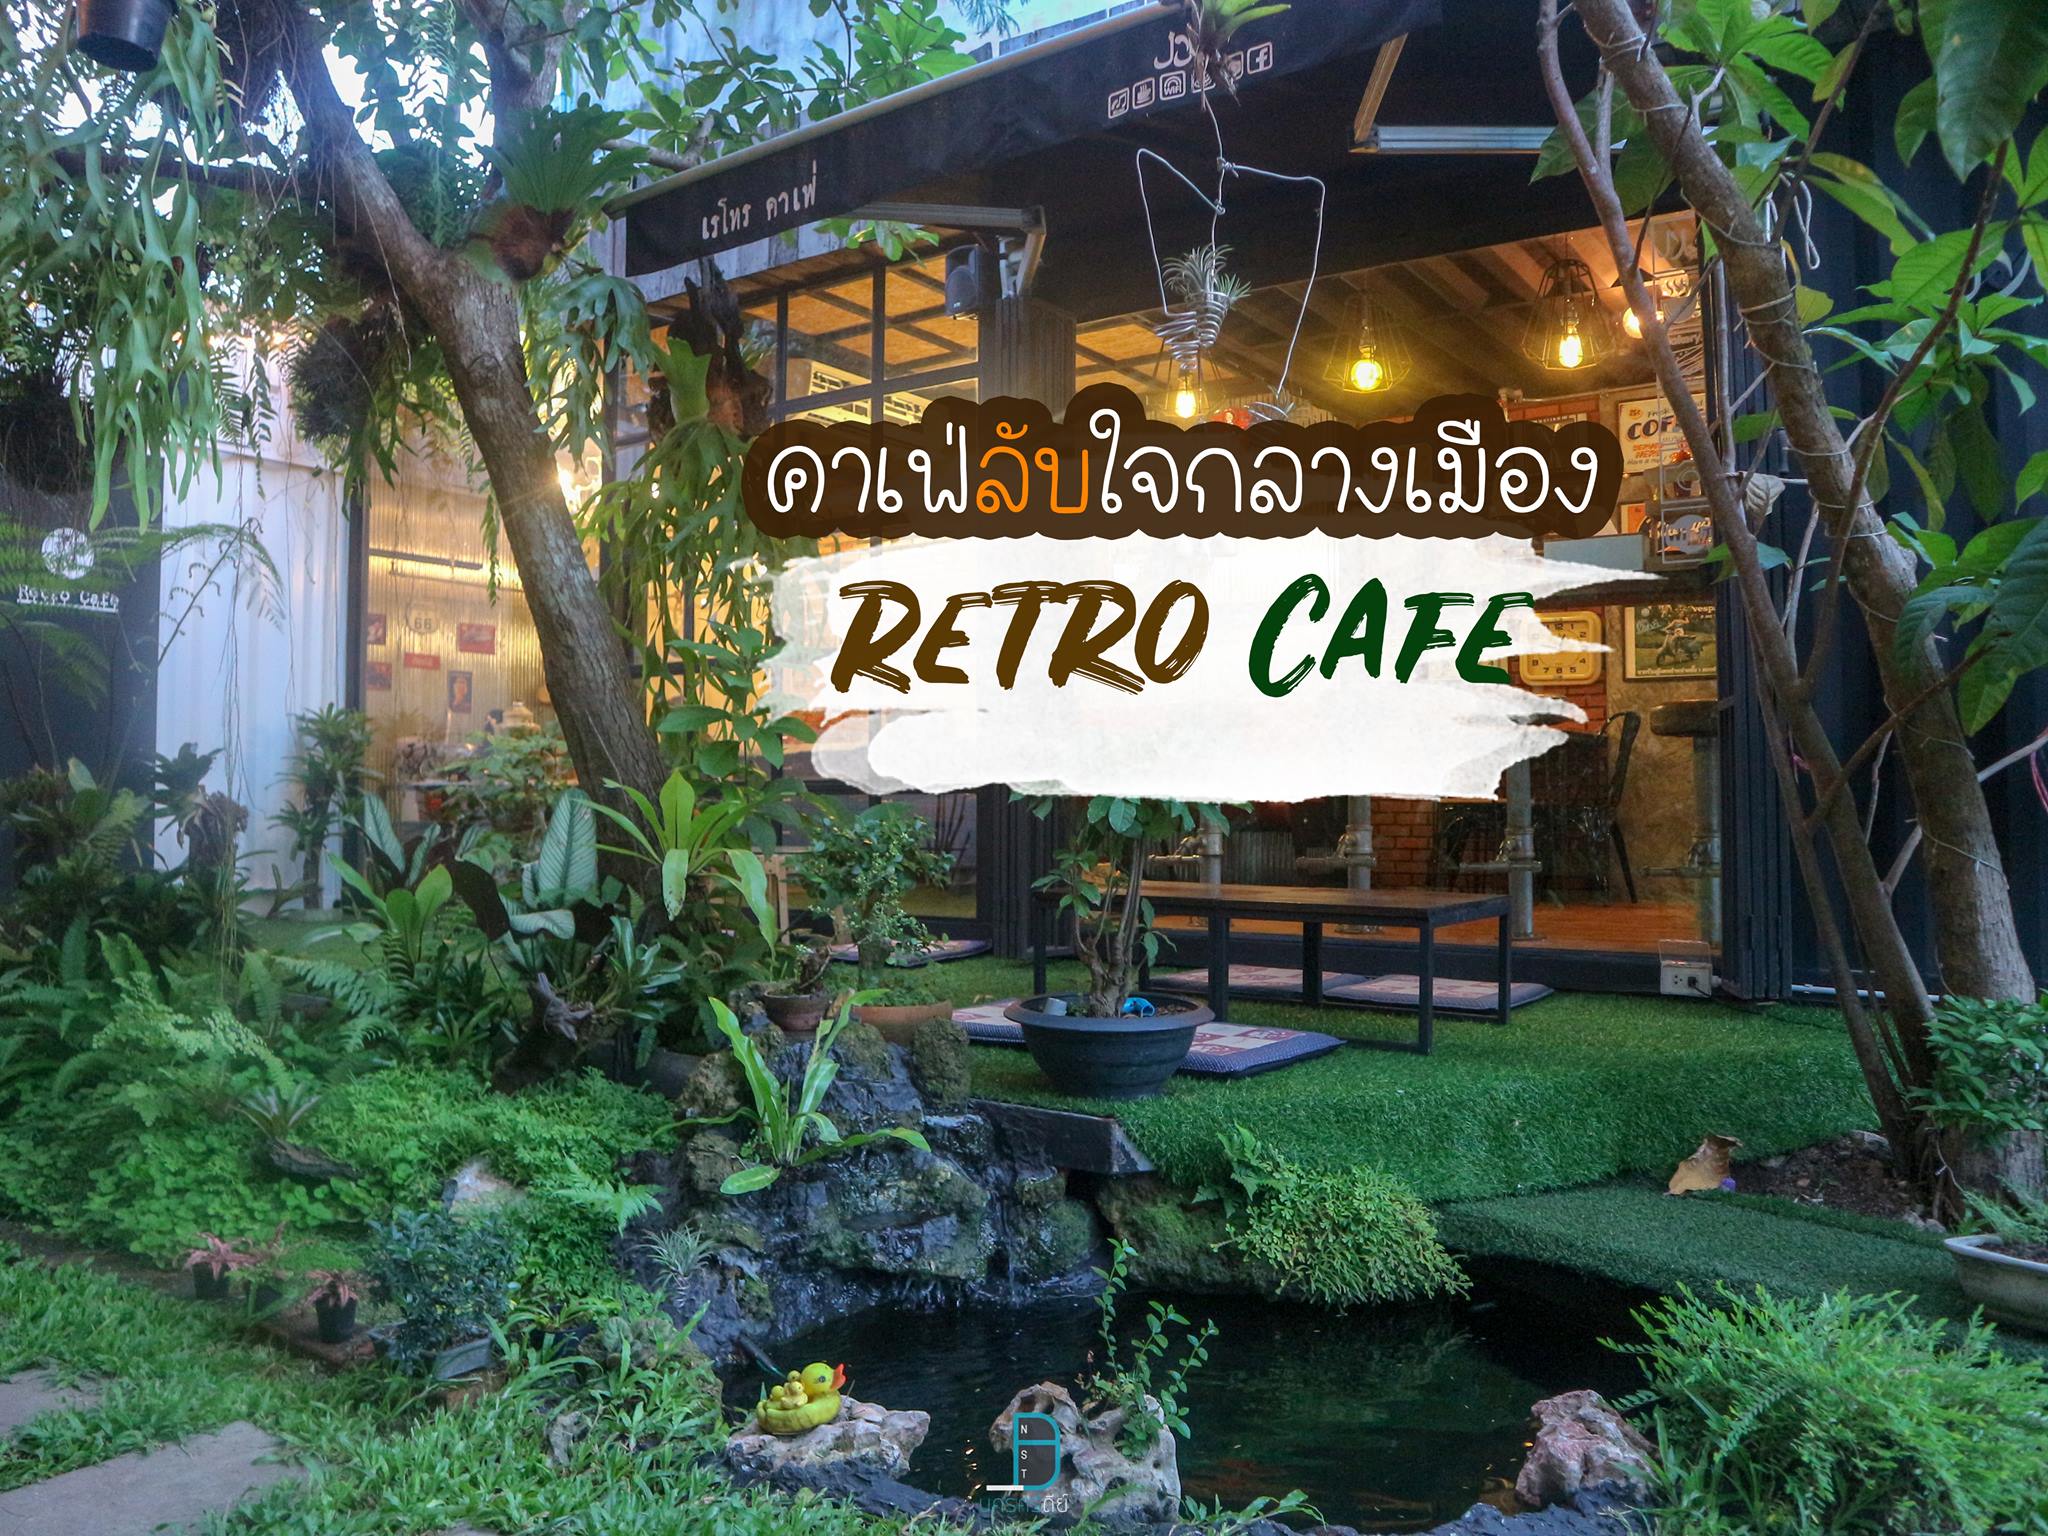 Retro Cafe คาเฟ่ลึกลับใจกลางเมือง บรรยากาศดี อาหารอร่อย เหมือนนั่งกลางป่า